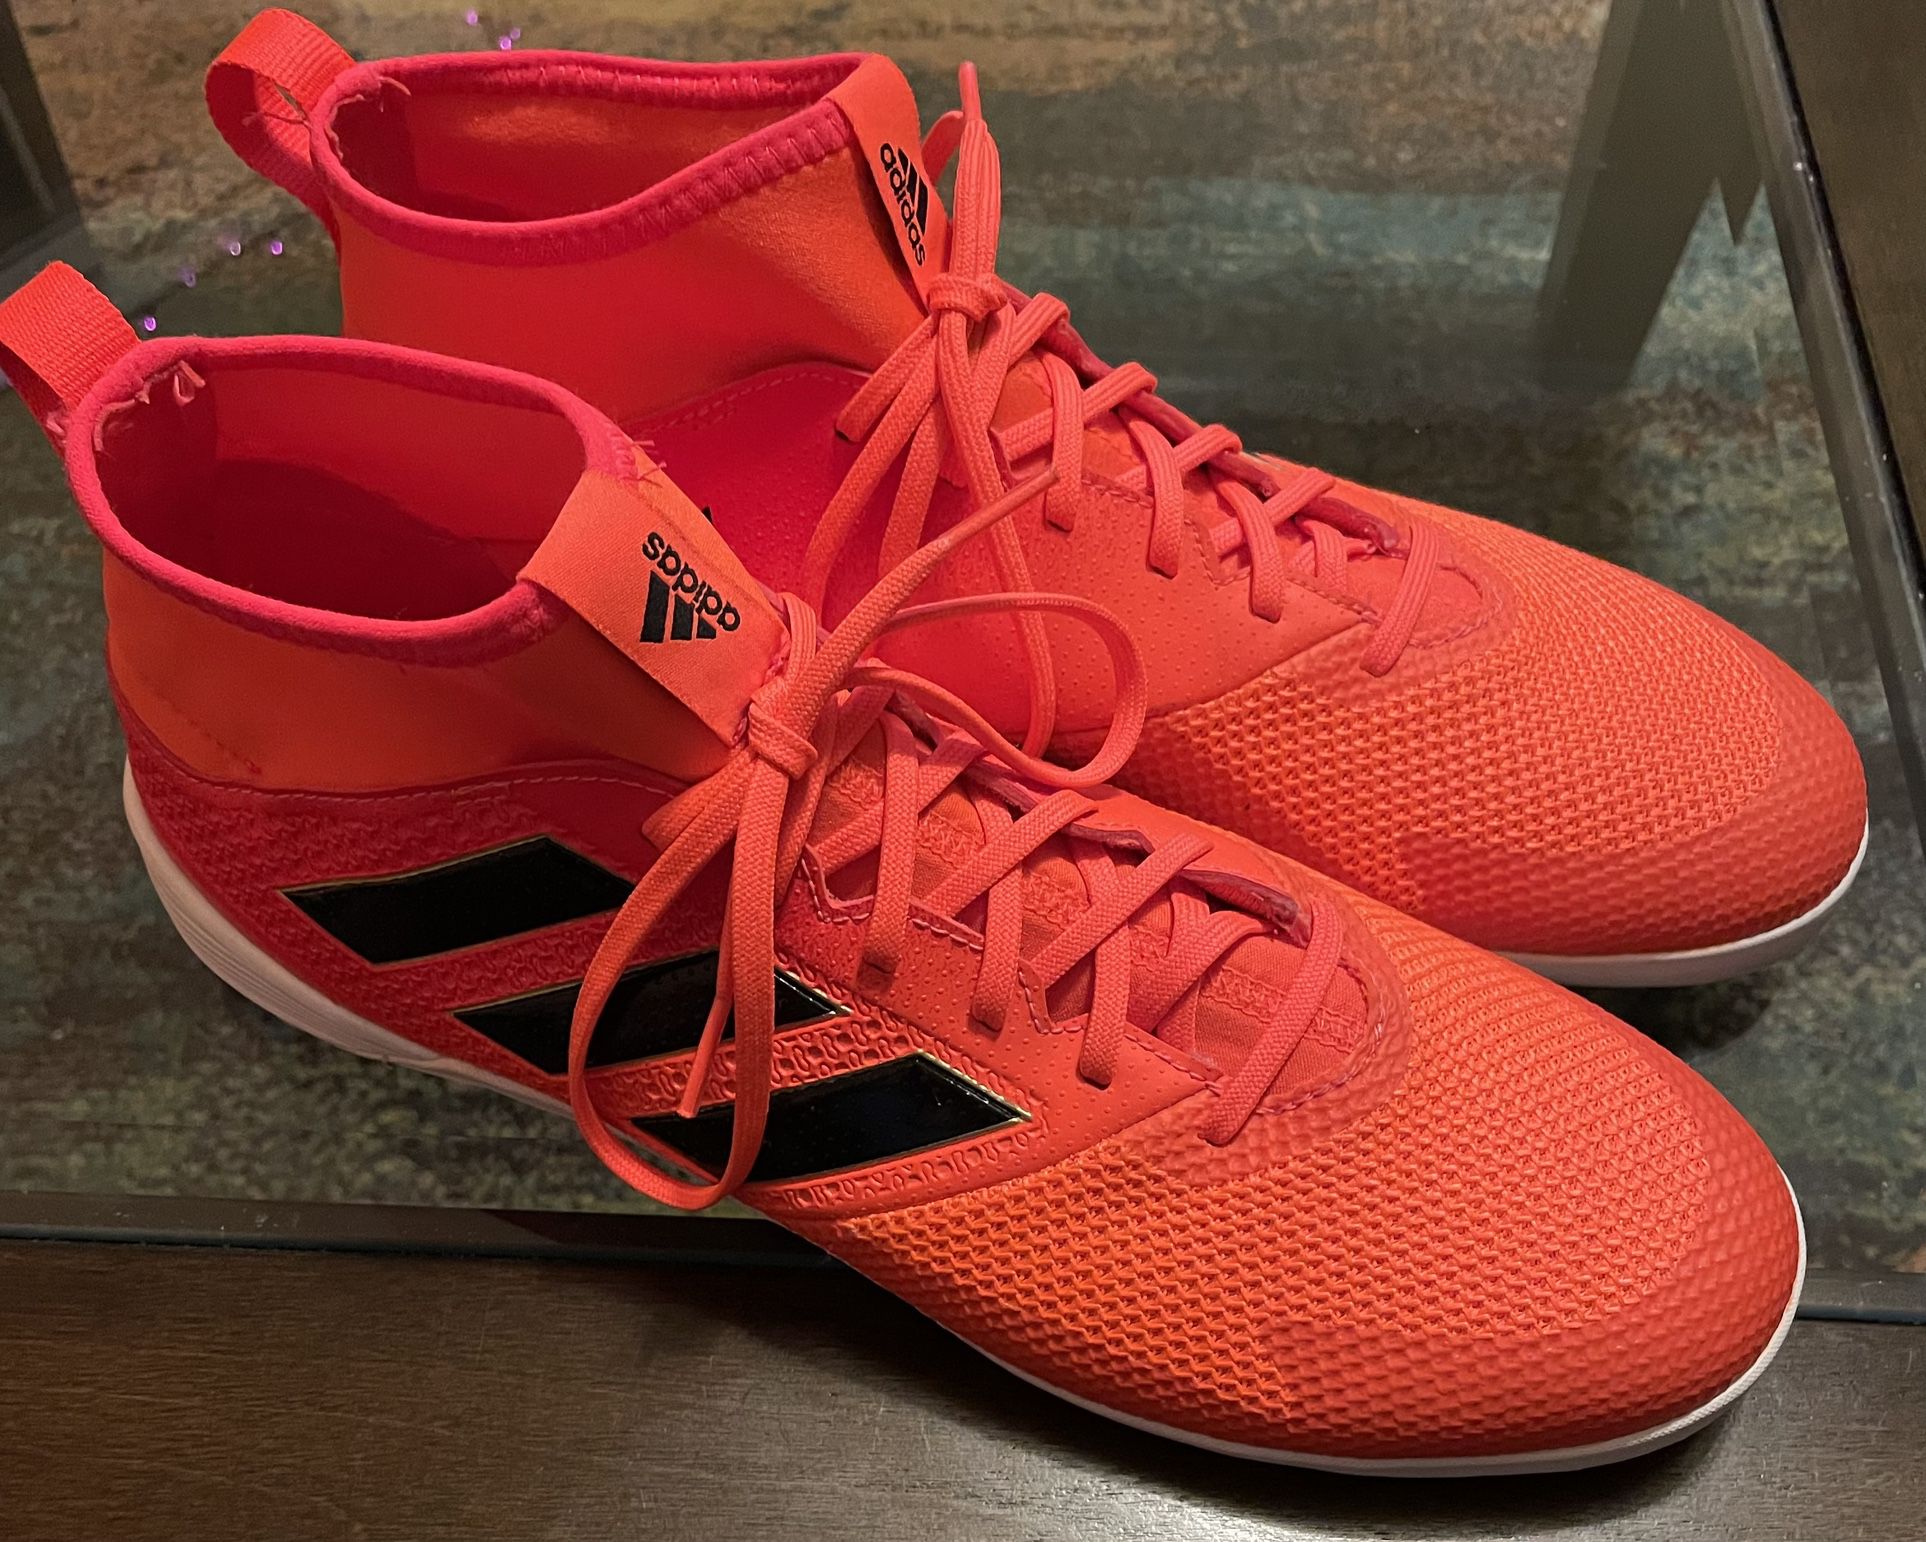 Adidas Men’s ACE Tango 17.3 Indoor Soccer Shoe. Men’s Size: 11